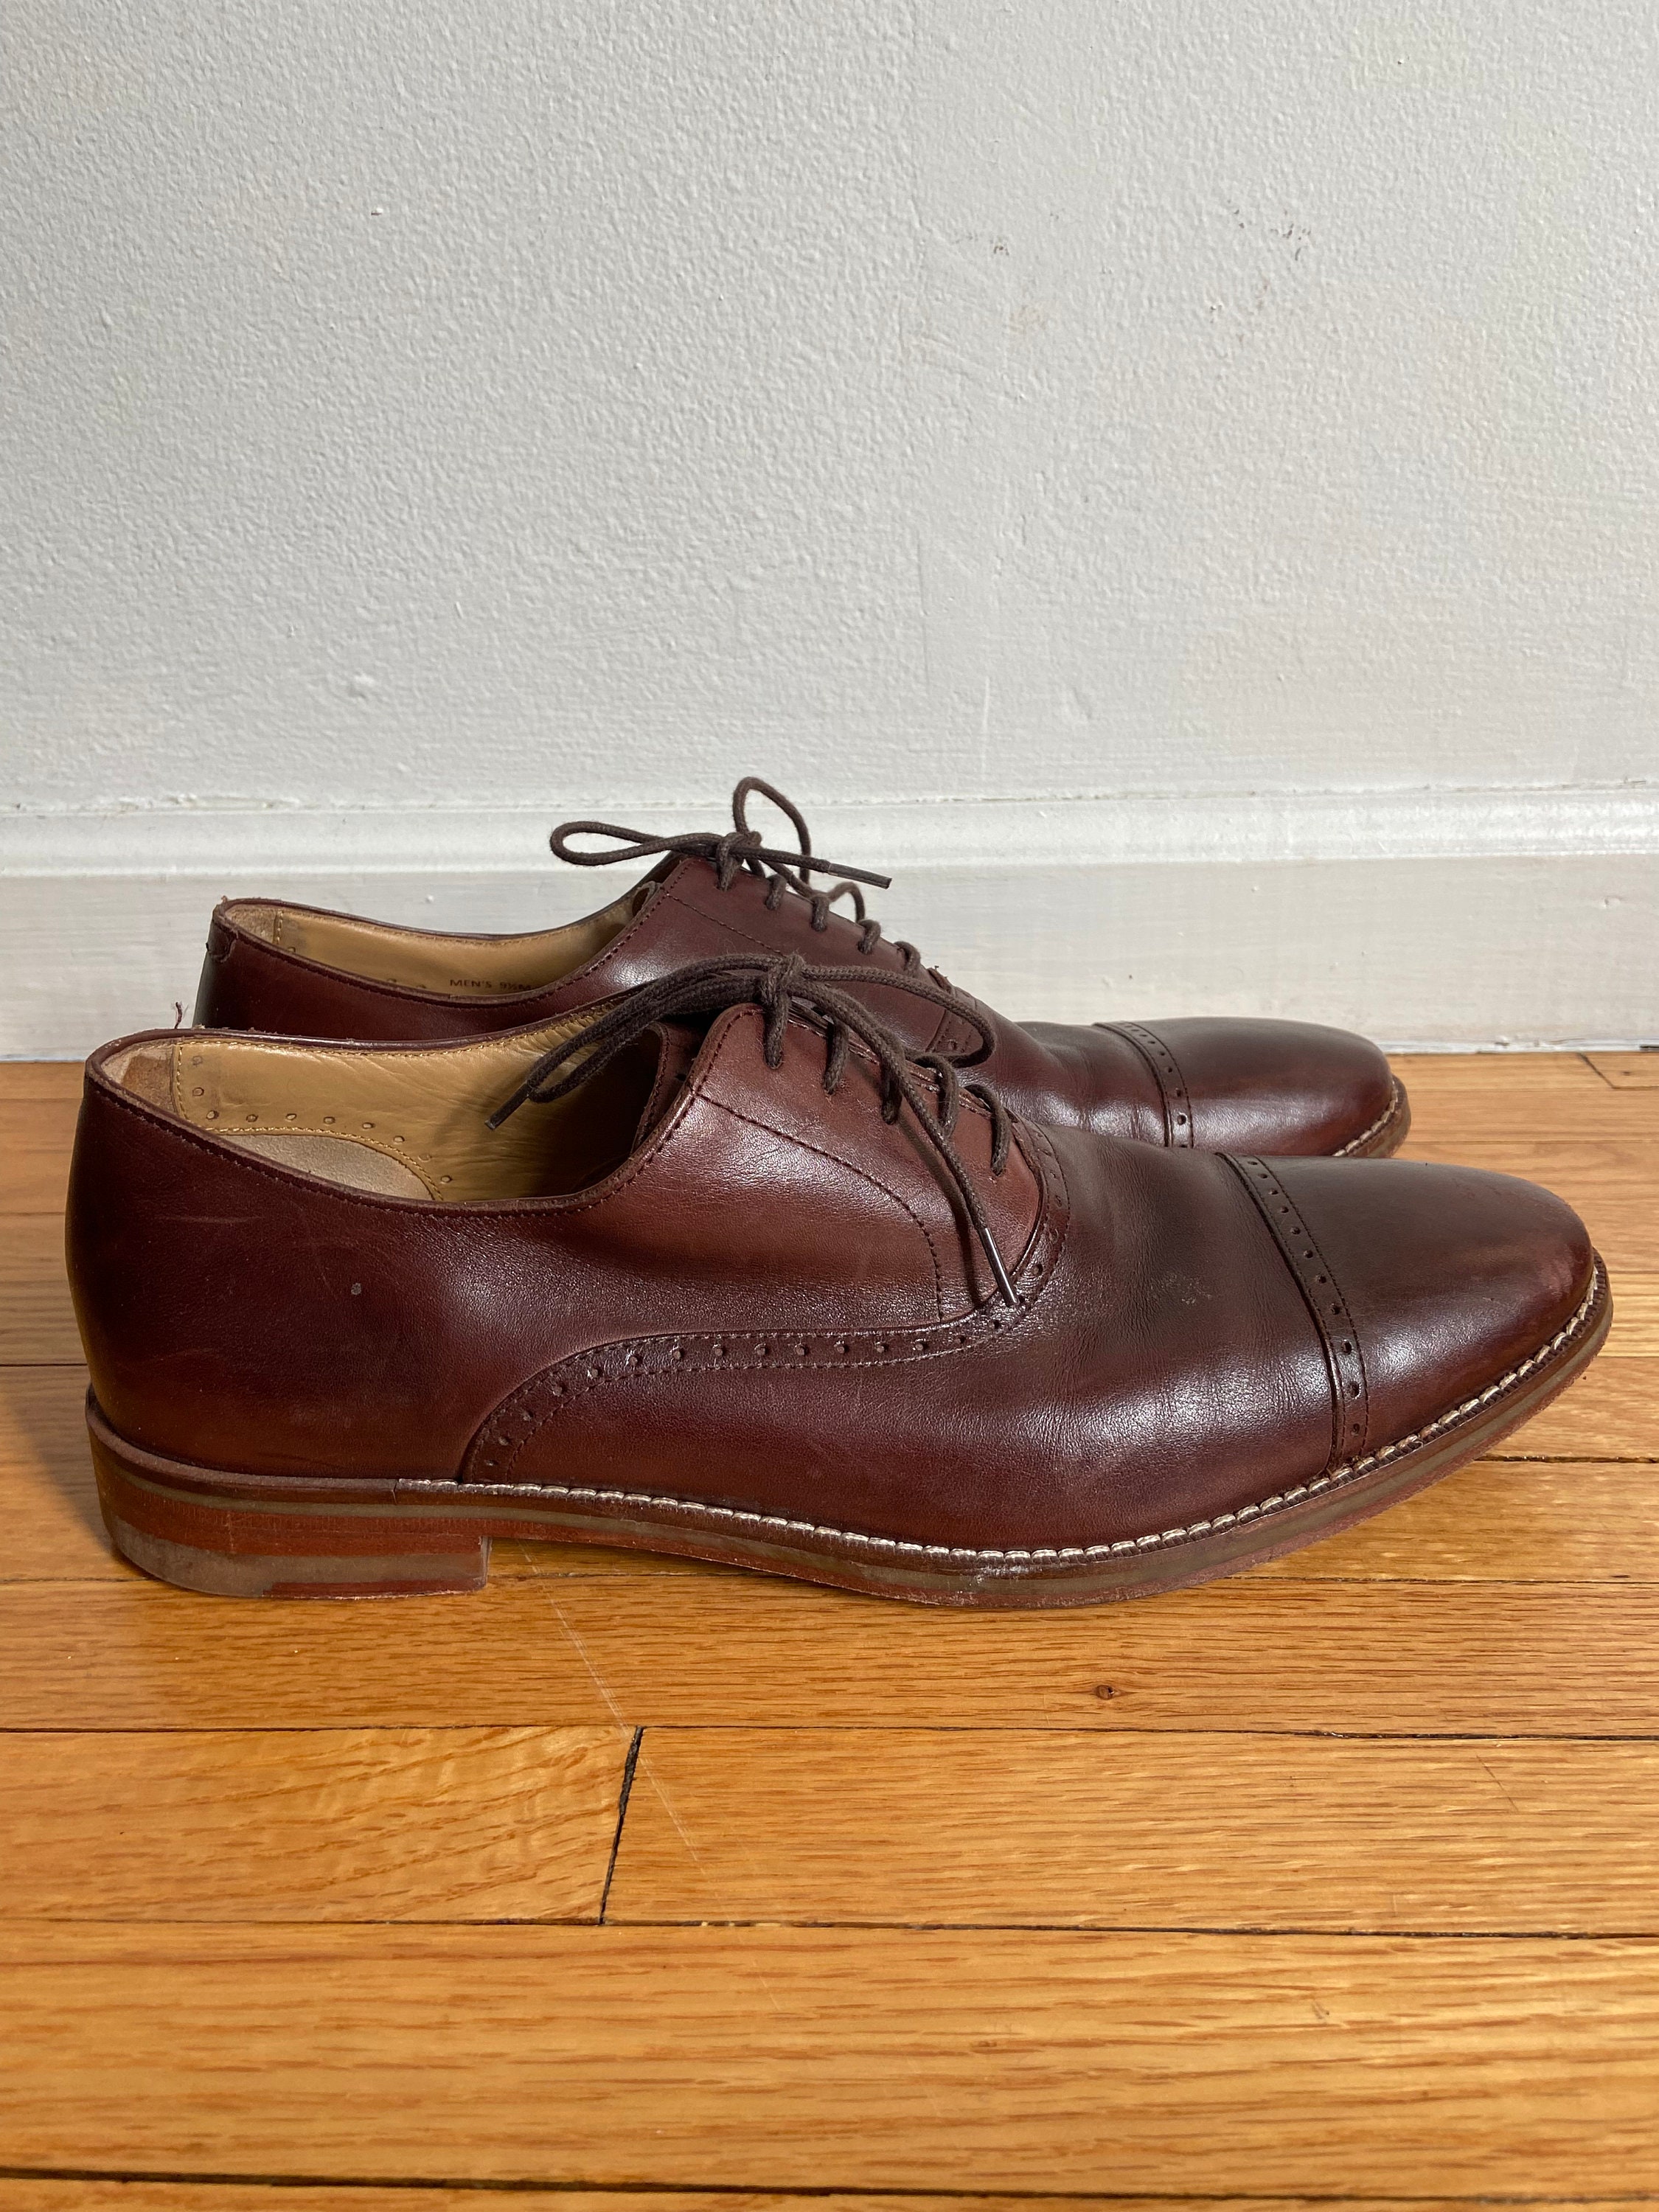  GALLERY SEVEN Dapper Mens Dress Shoes - Oxford Shoes Men -  Black Semi-Brogues - 10.5 D(M) US